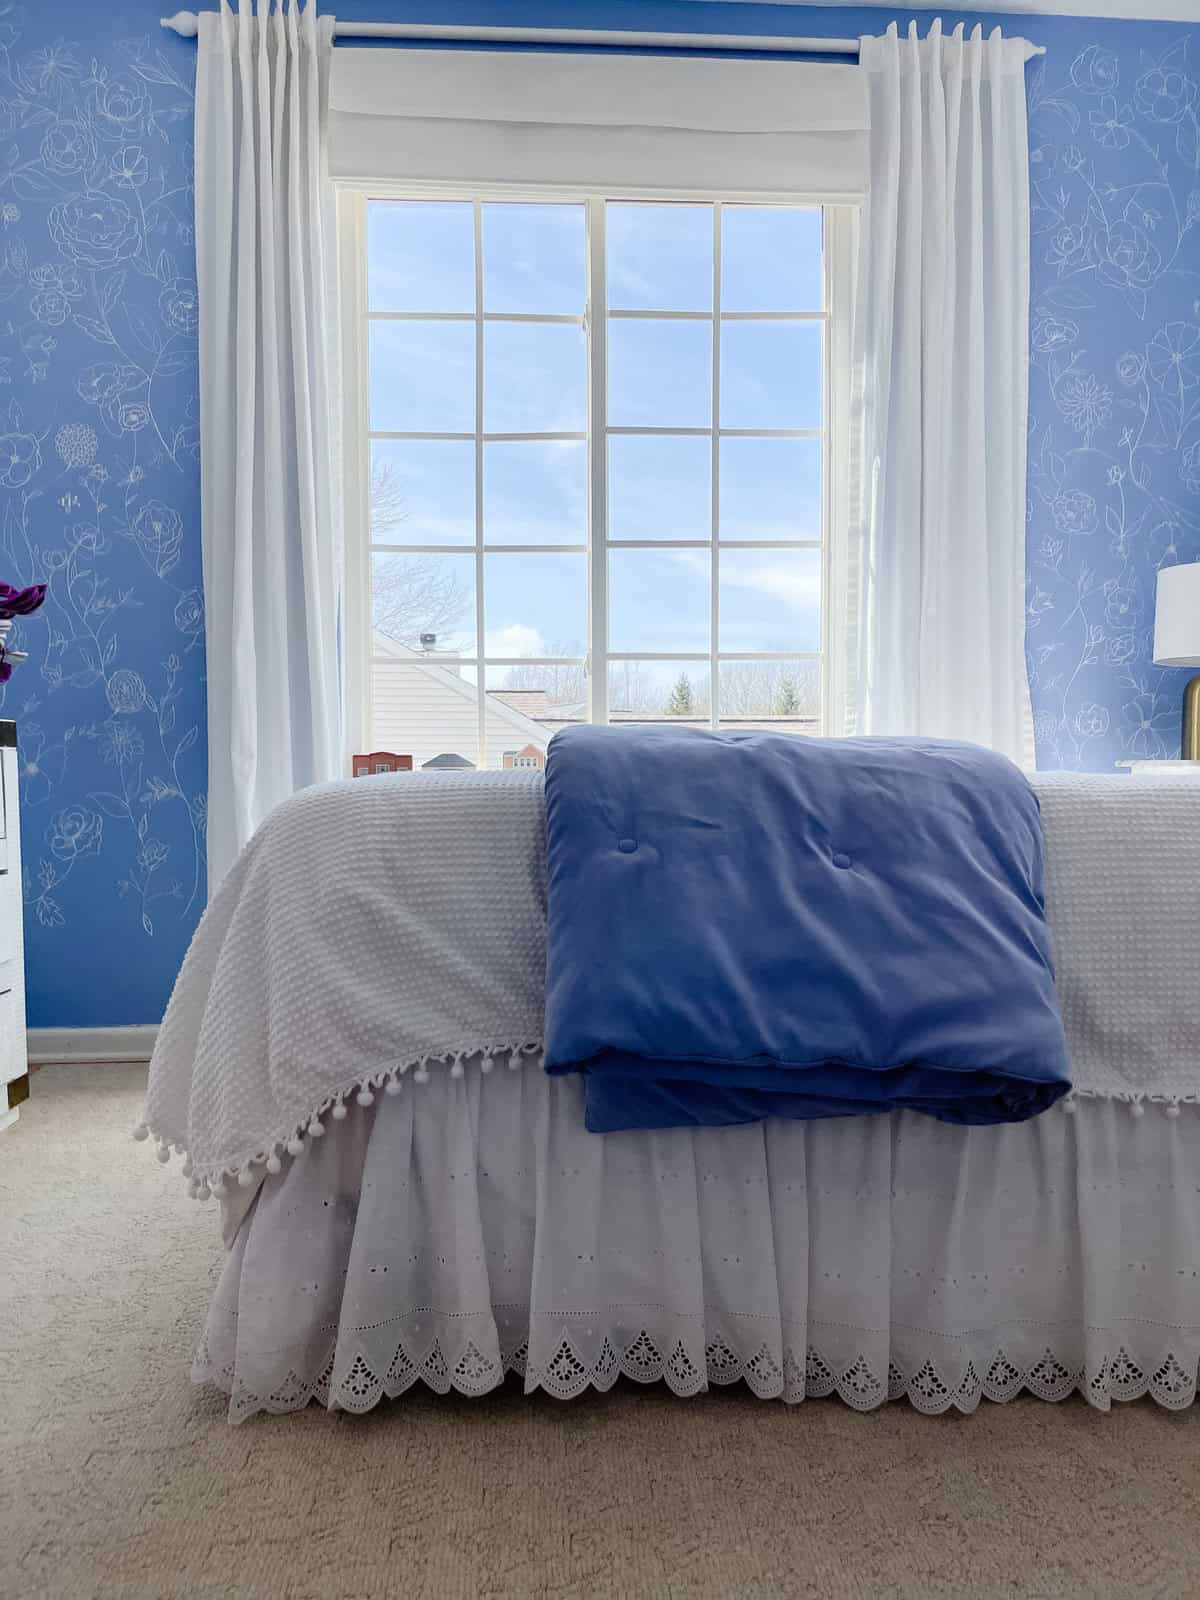 Tween Bedroom Ideas blue